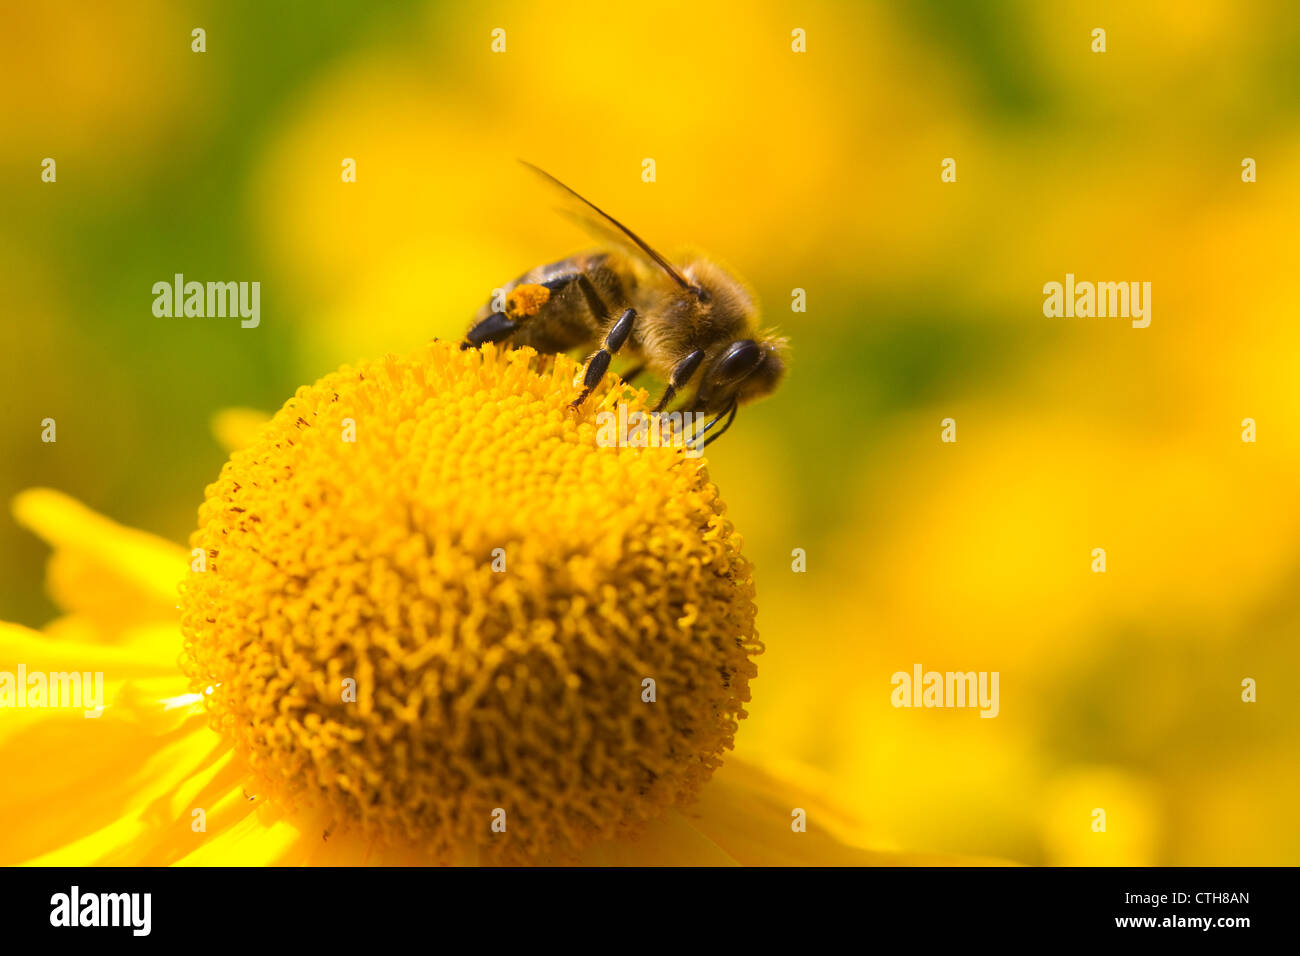 Miel de abejas (Apis mellifera), recogiendo el néctar de las flores en flor amarilla, probablemente de maíz (marigold Crysanthemum segetum), Londres, Reino Unido, verano Foto de stock